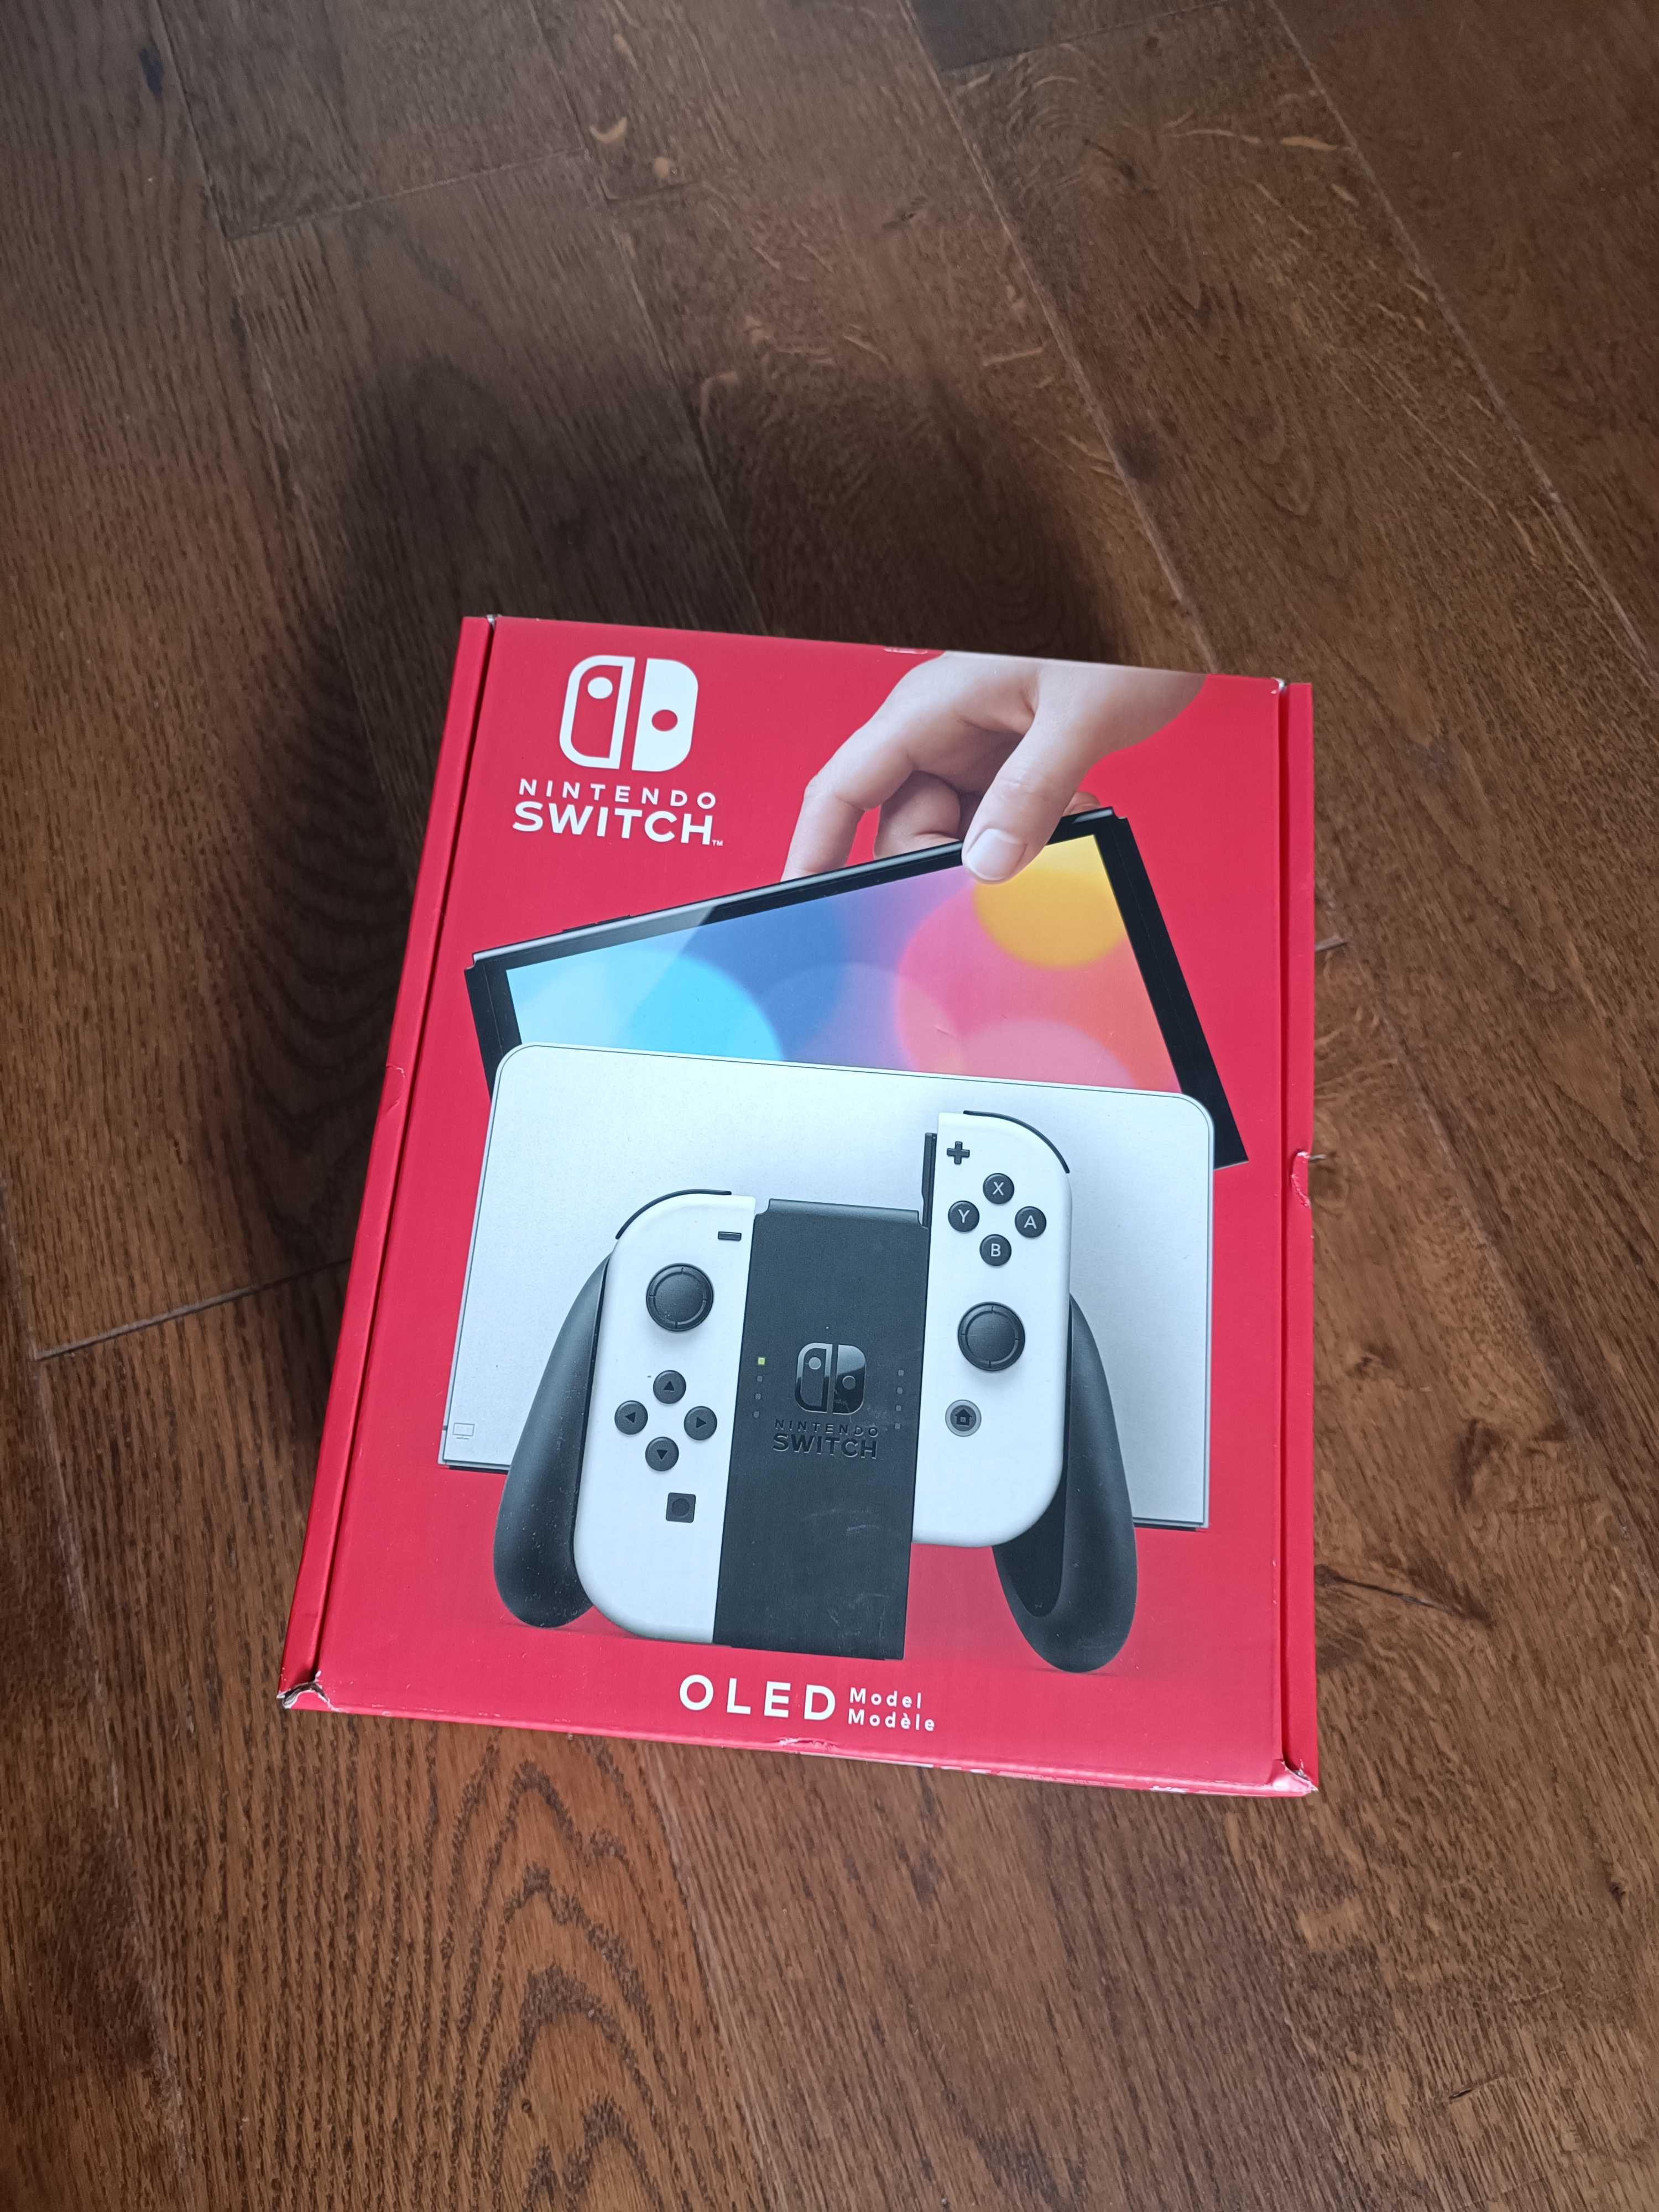 Nintendo Switch OLED White, cały komplet, doskonały stan, gwarancja